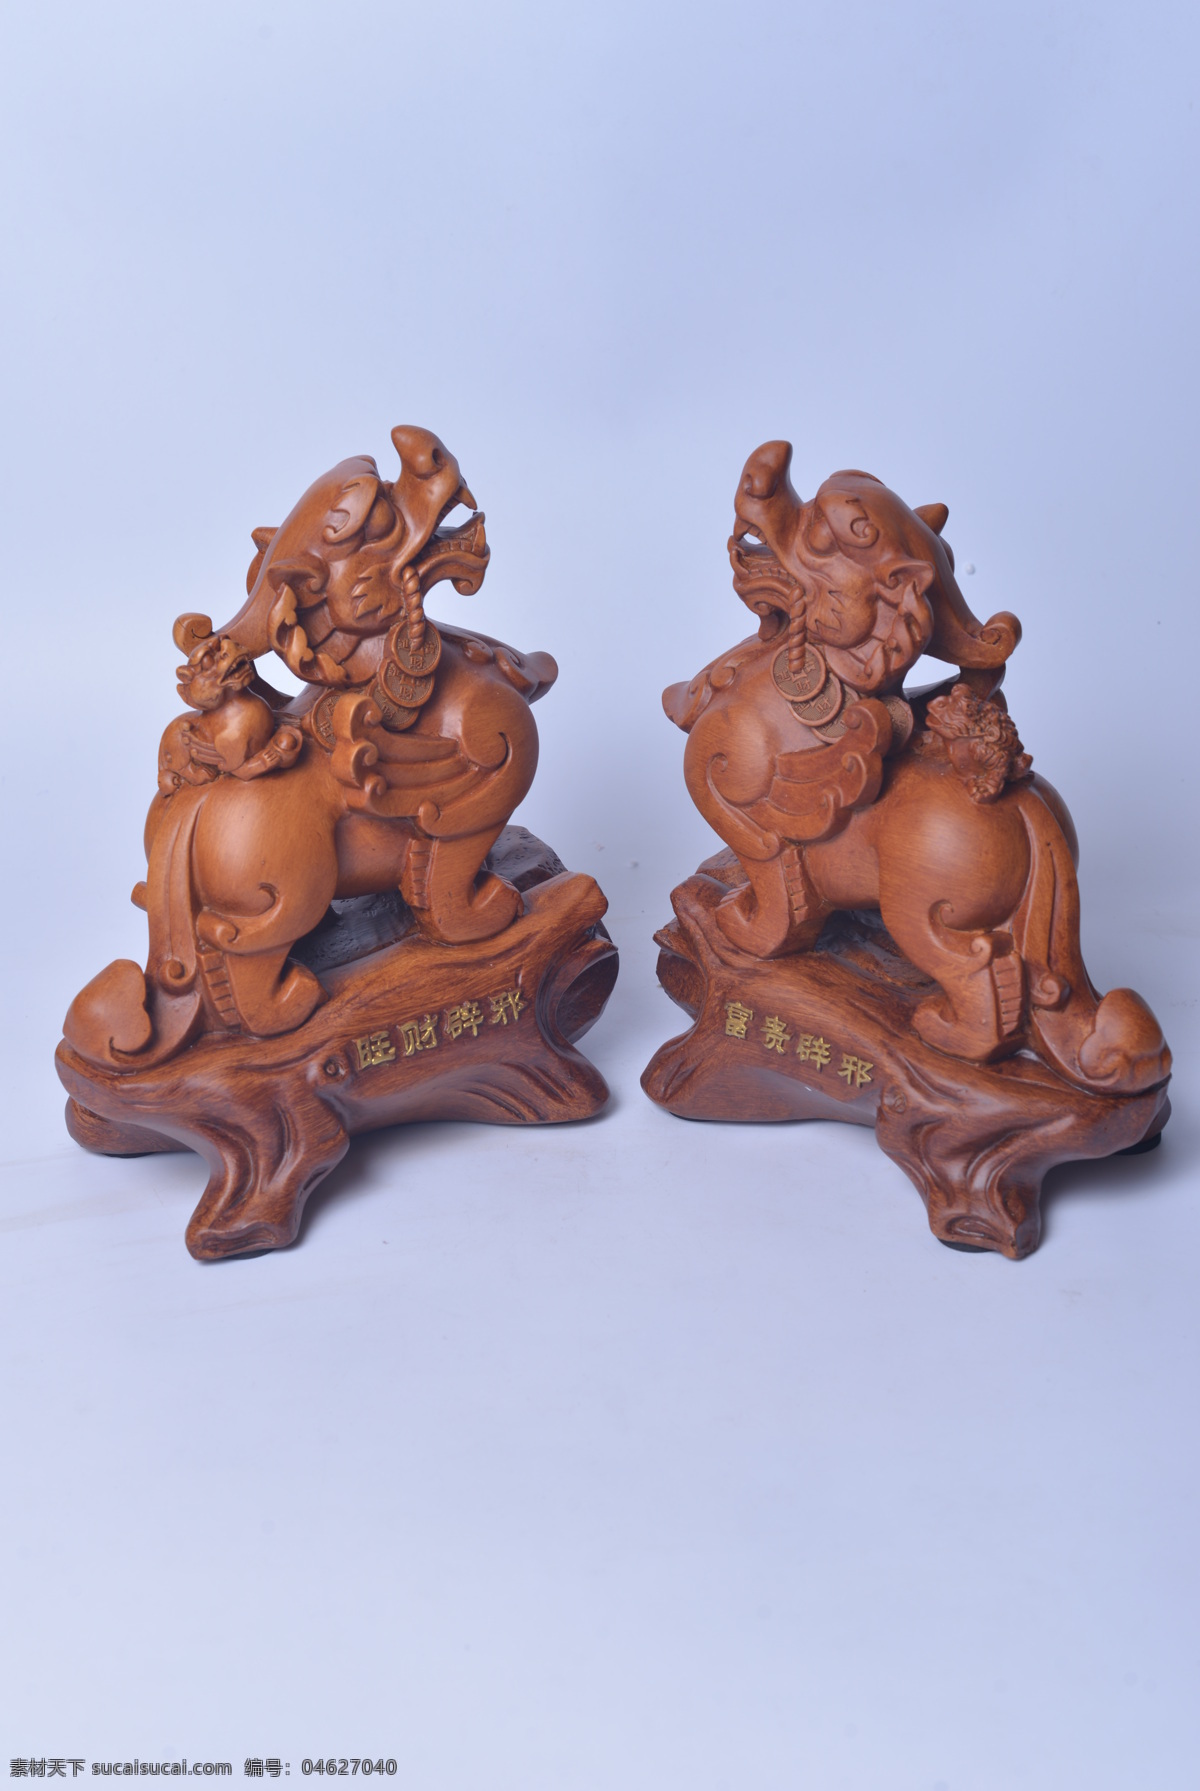 工艺品 摆件 礼物 麒麟 狮子 送礼 雕刻 文化艺术 传统文化